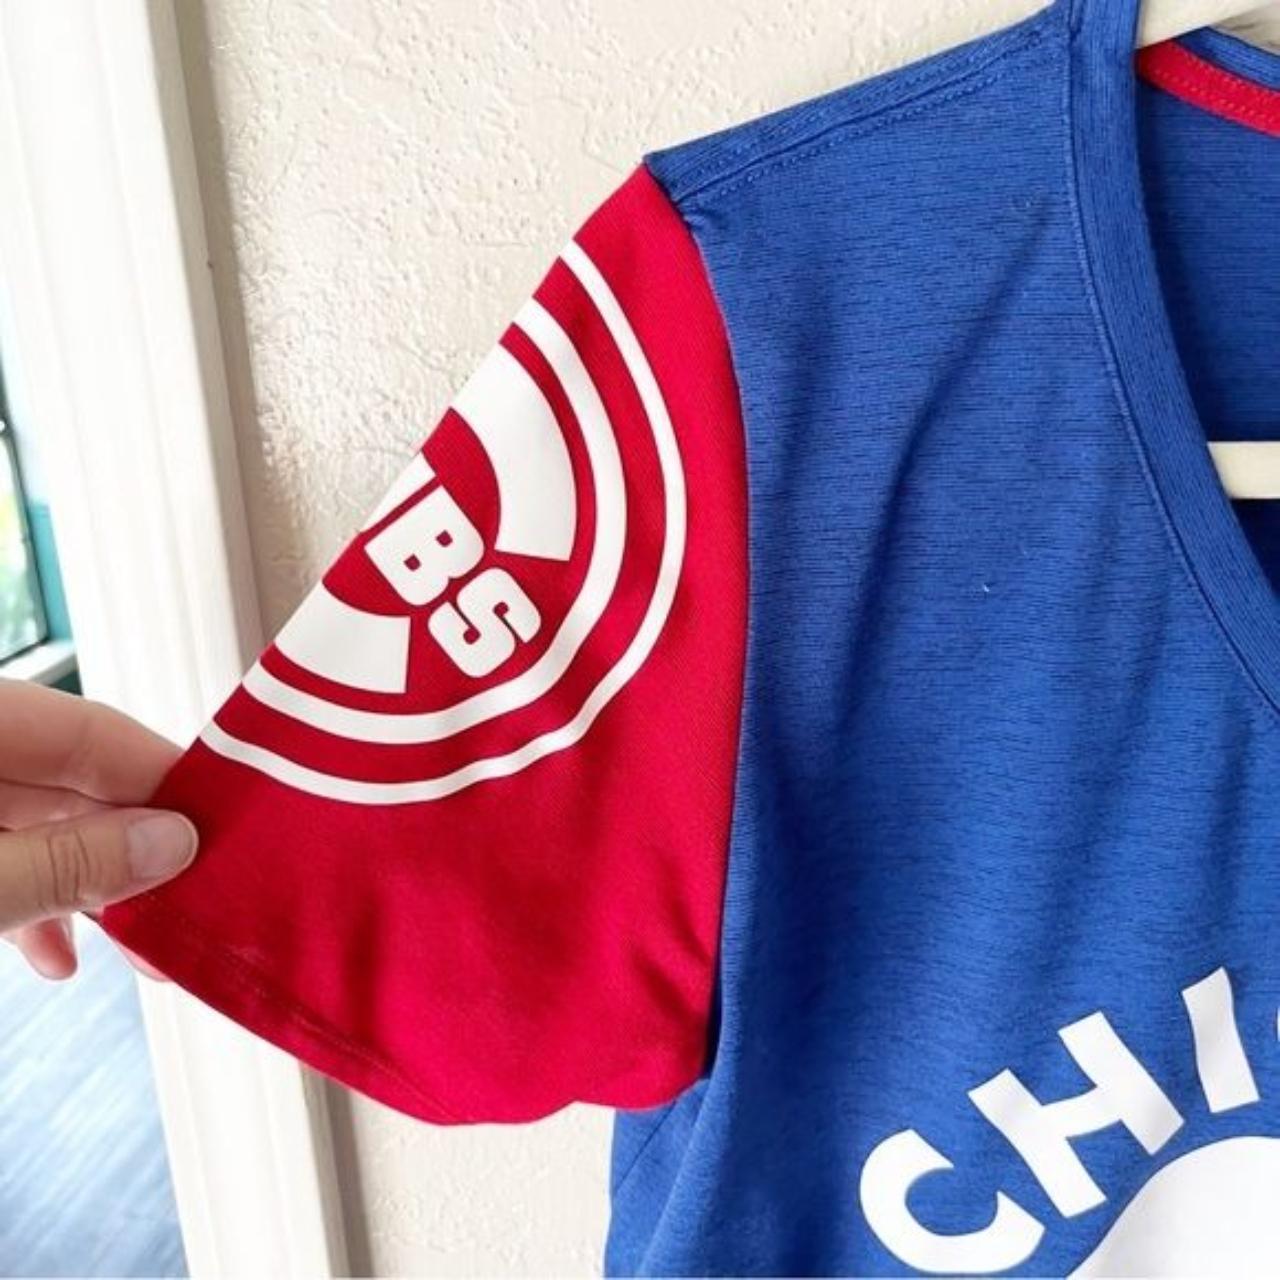 Nike Chicago Cubs T Shirt Womens Size Medium. New.  - Depop